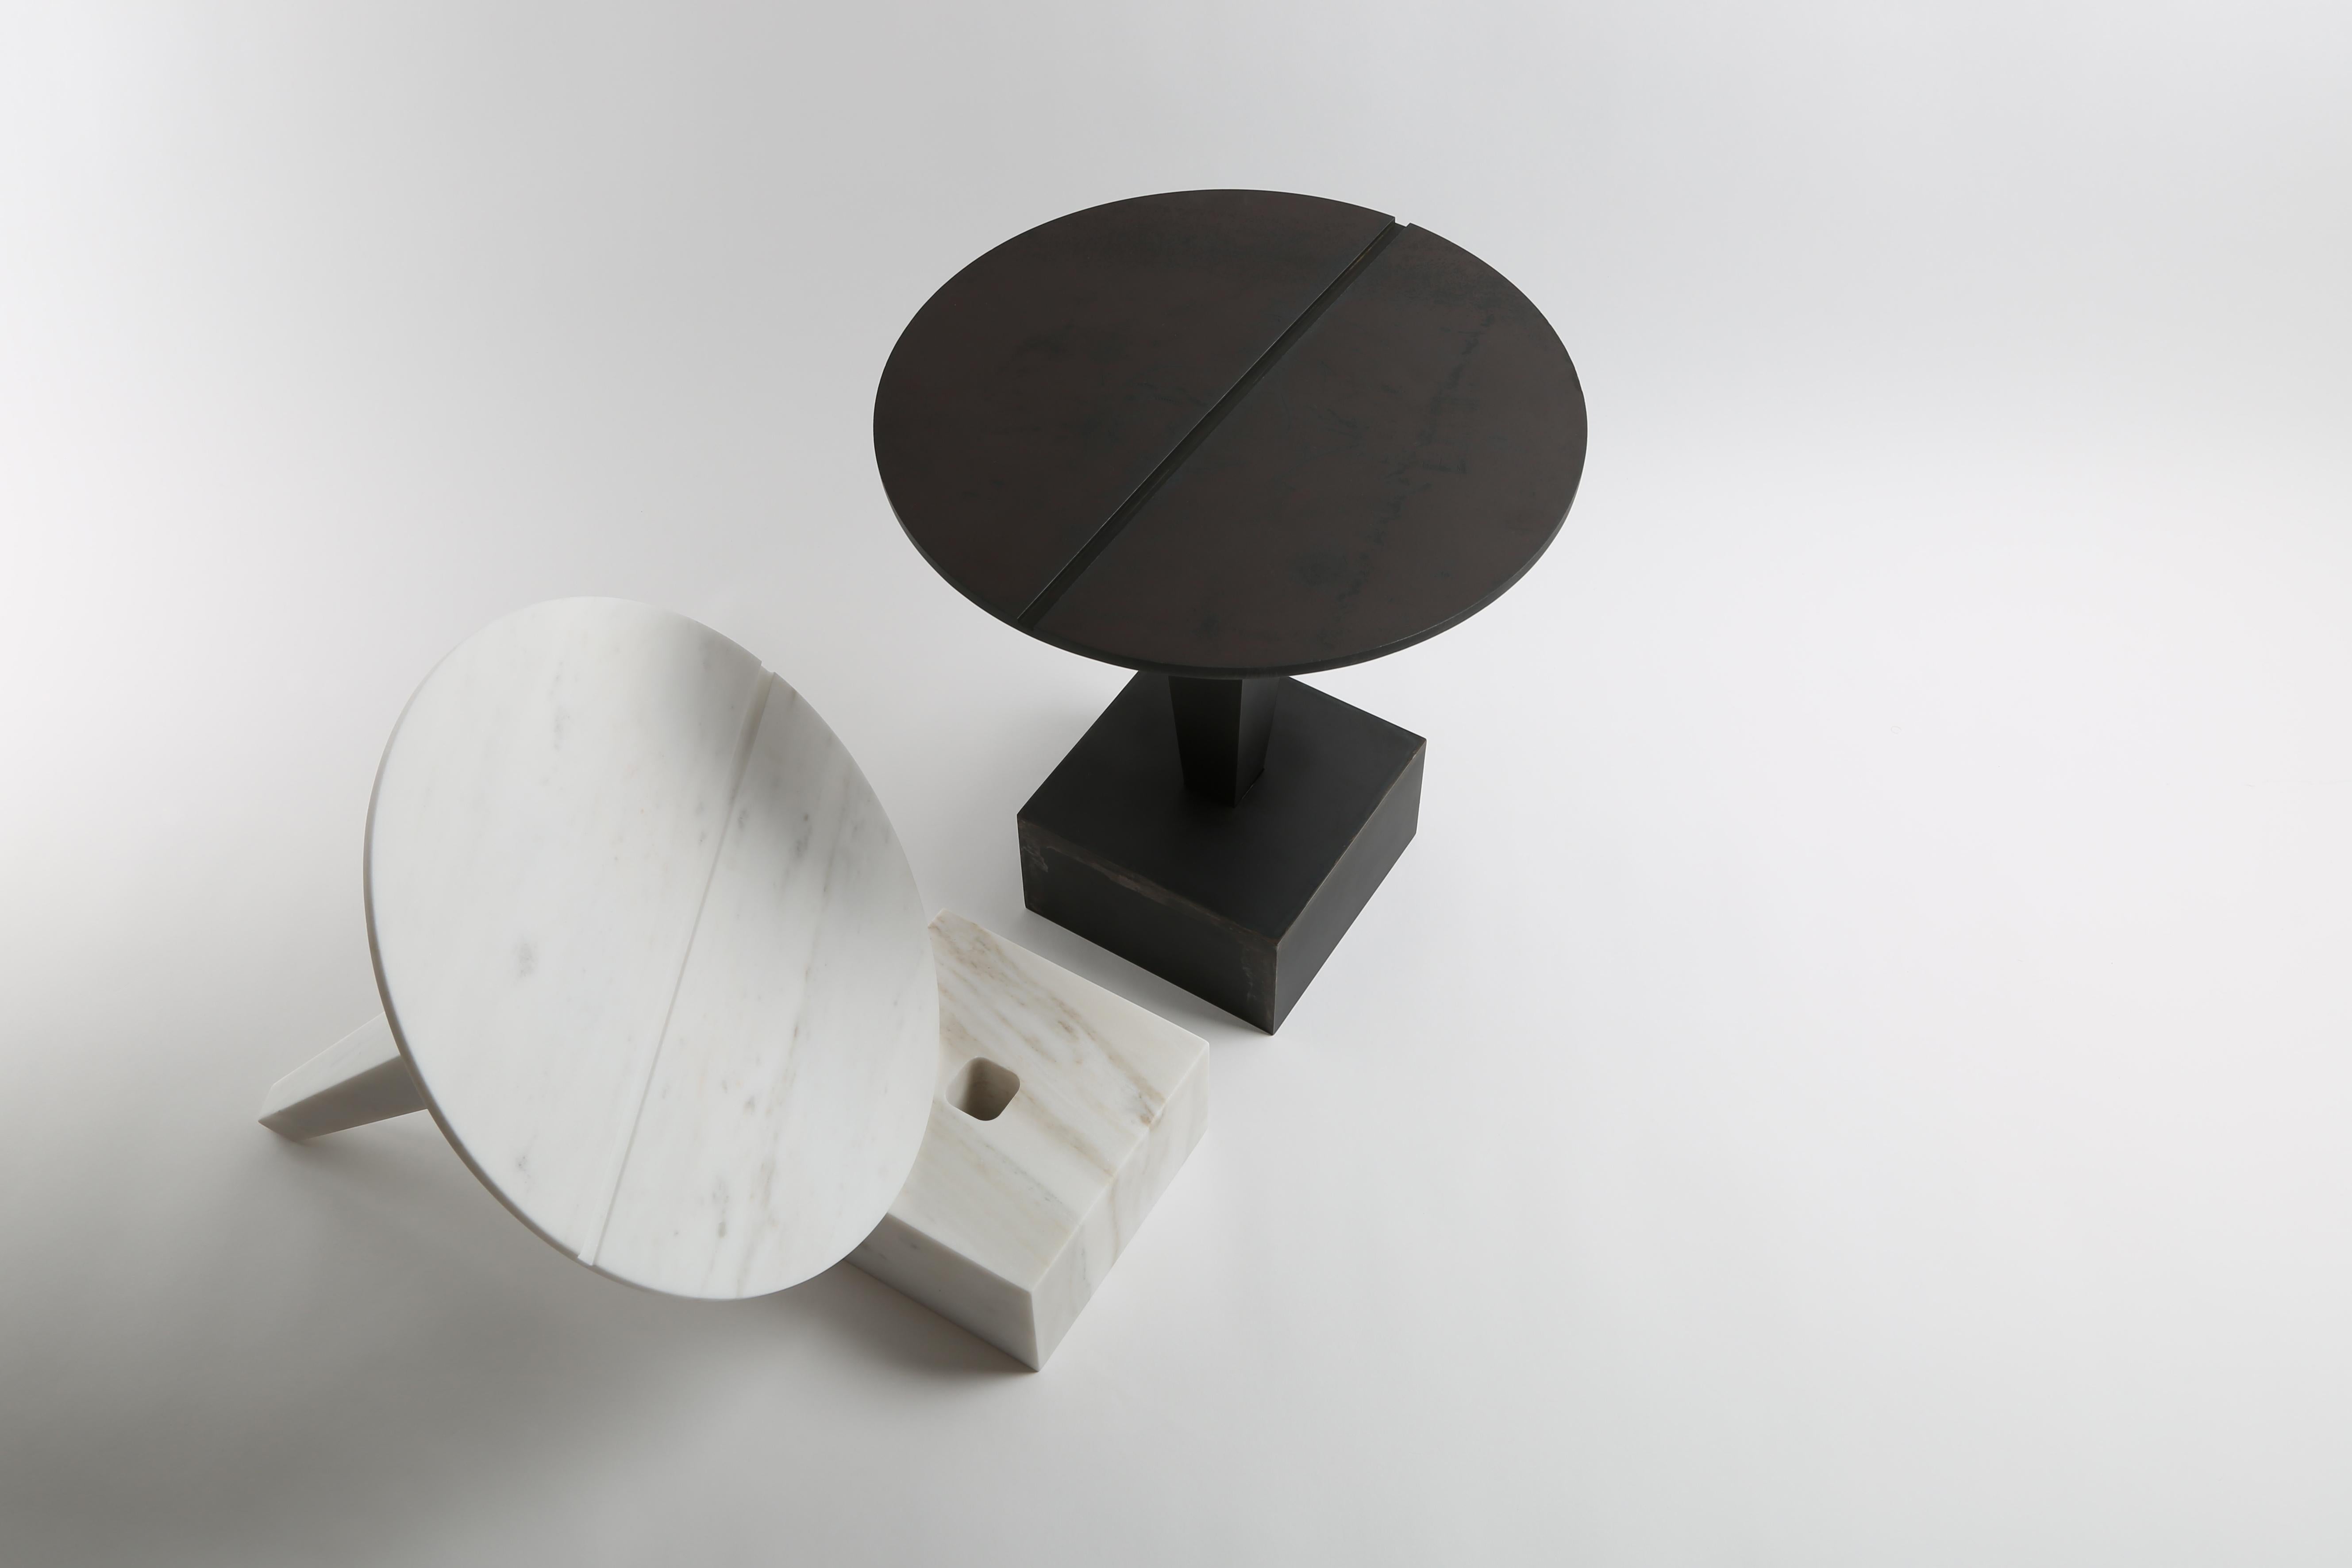 Clou-Beistelltisch-Set von Richard Yasmine
MATERIAL: Massiver pentelischer Marmor
Abmessungen: 44 x 40 cm

Ein Nagel (französisch clou) ist ein längliches Metallstück, das dazu dient, zwei Objekte miteinander zu verbinden. Er besteht aus einem